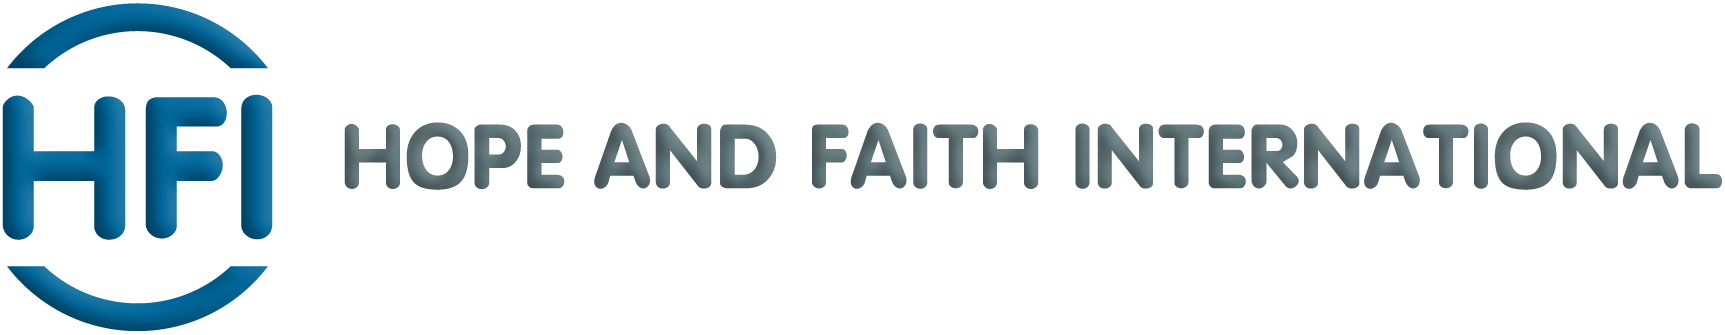 Hope and Faith International